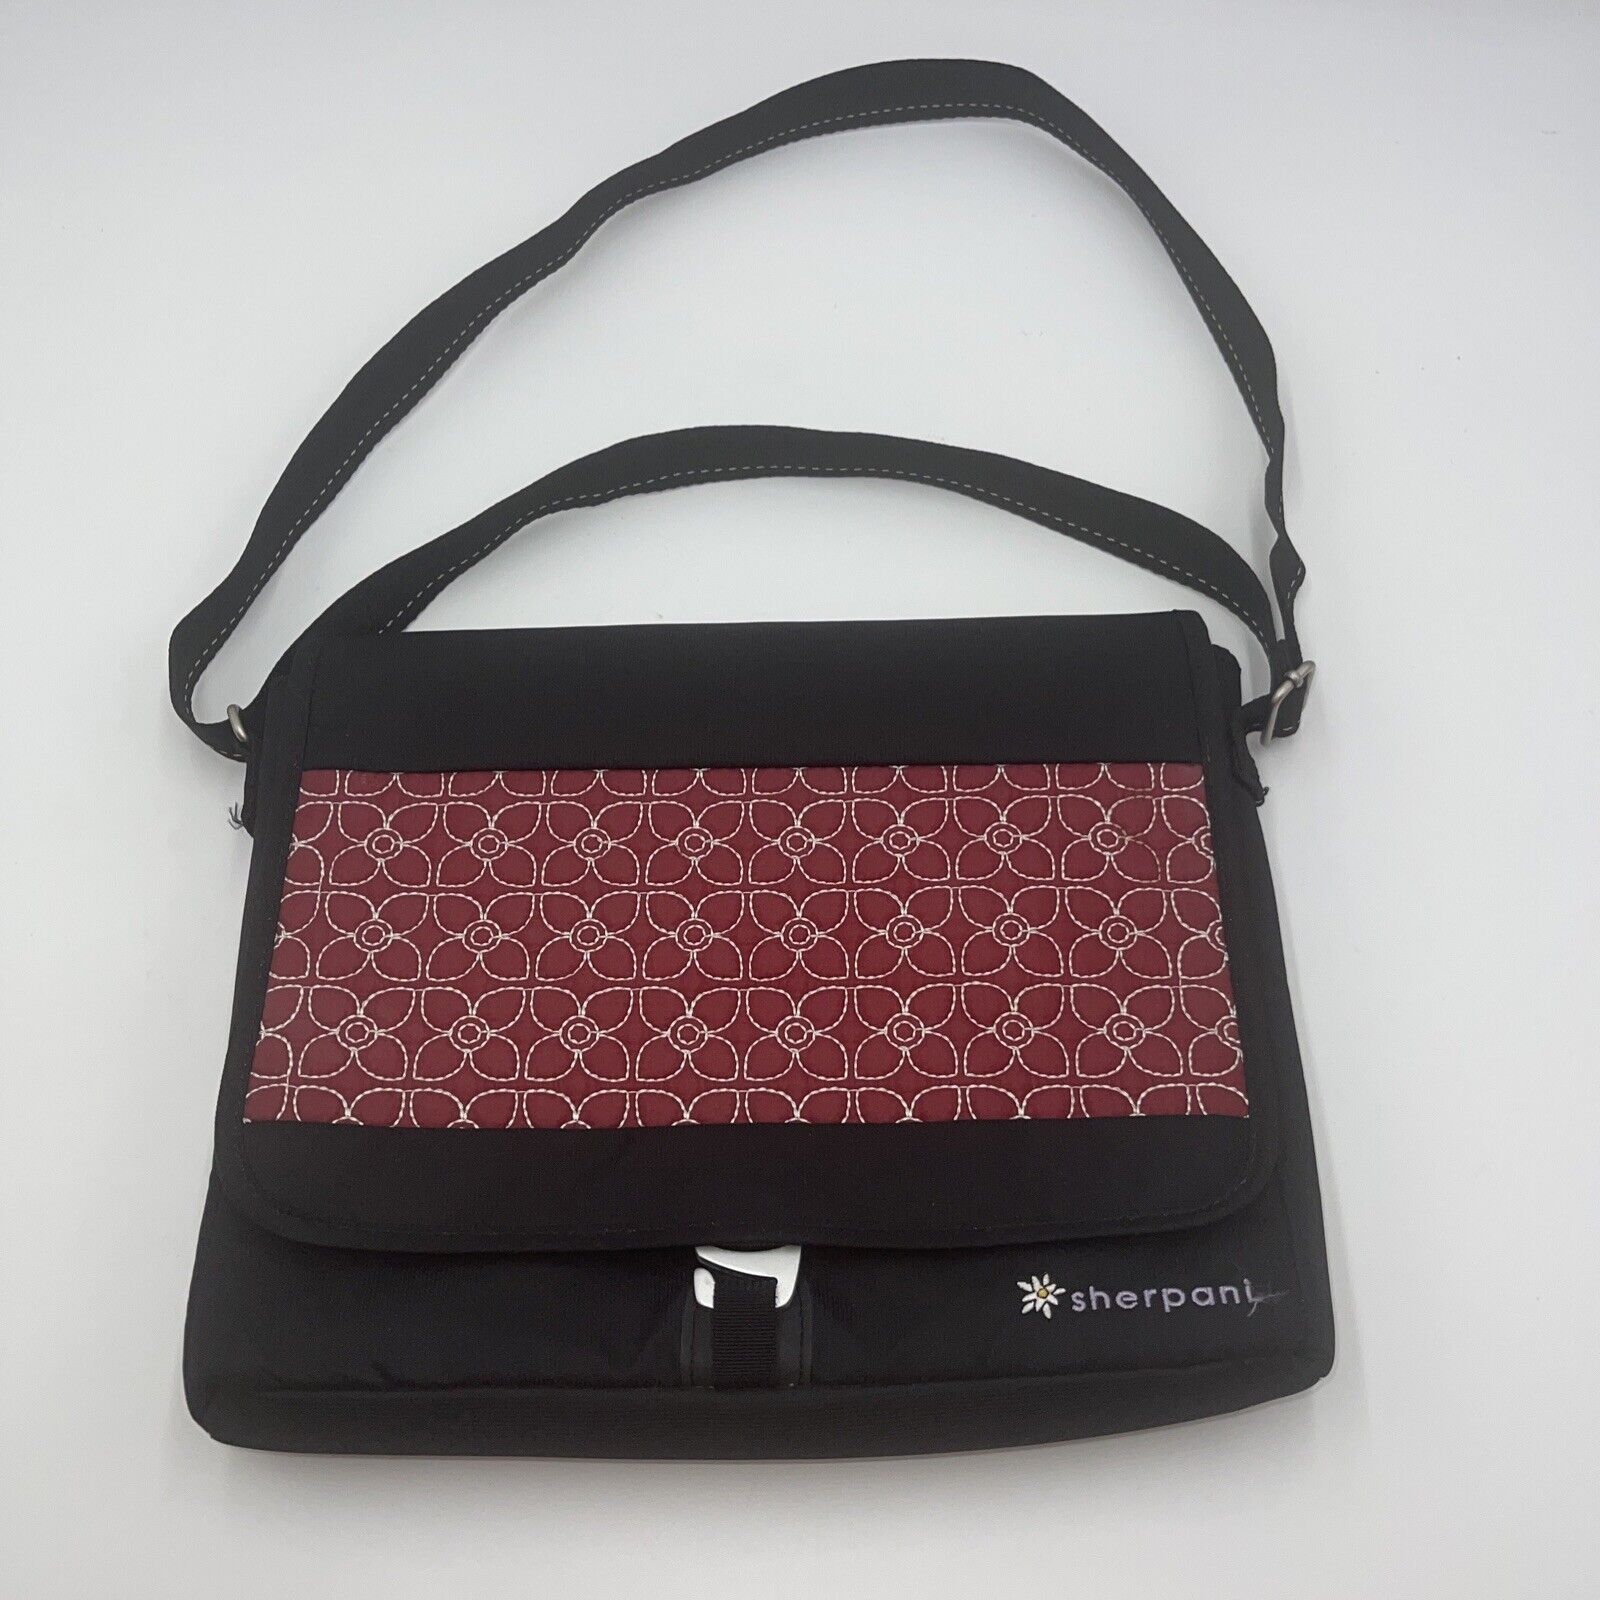 Sherpani Ion tablet / messenger bag